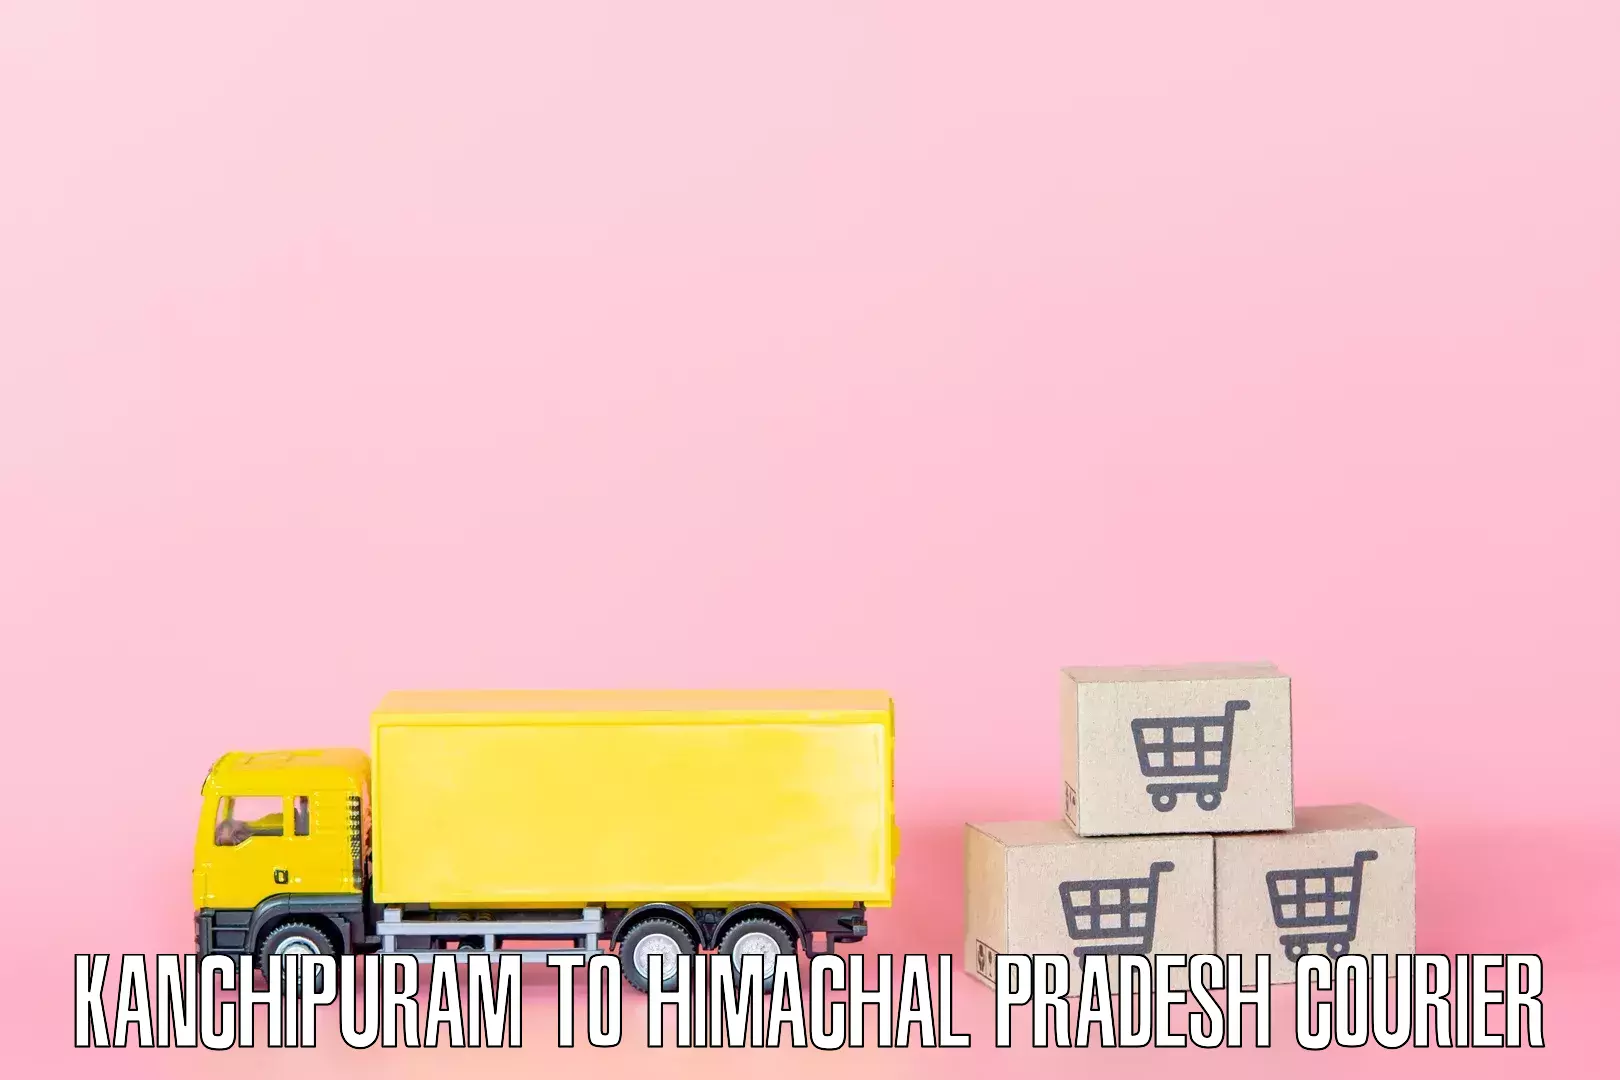 Furniture transport service Kanchipuram to Himachal Pradesh